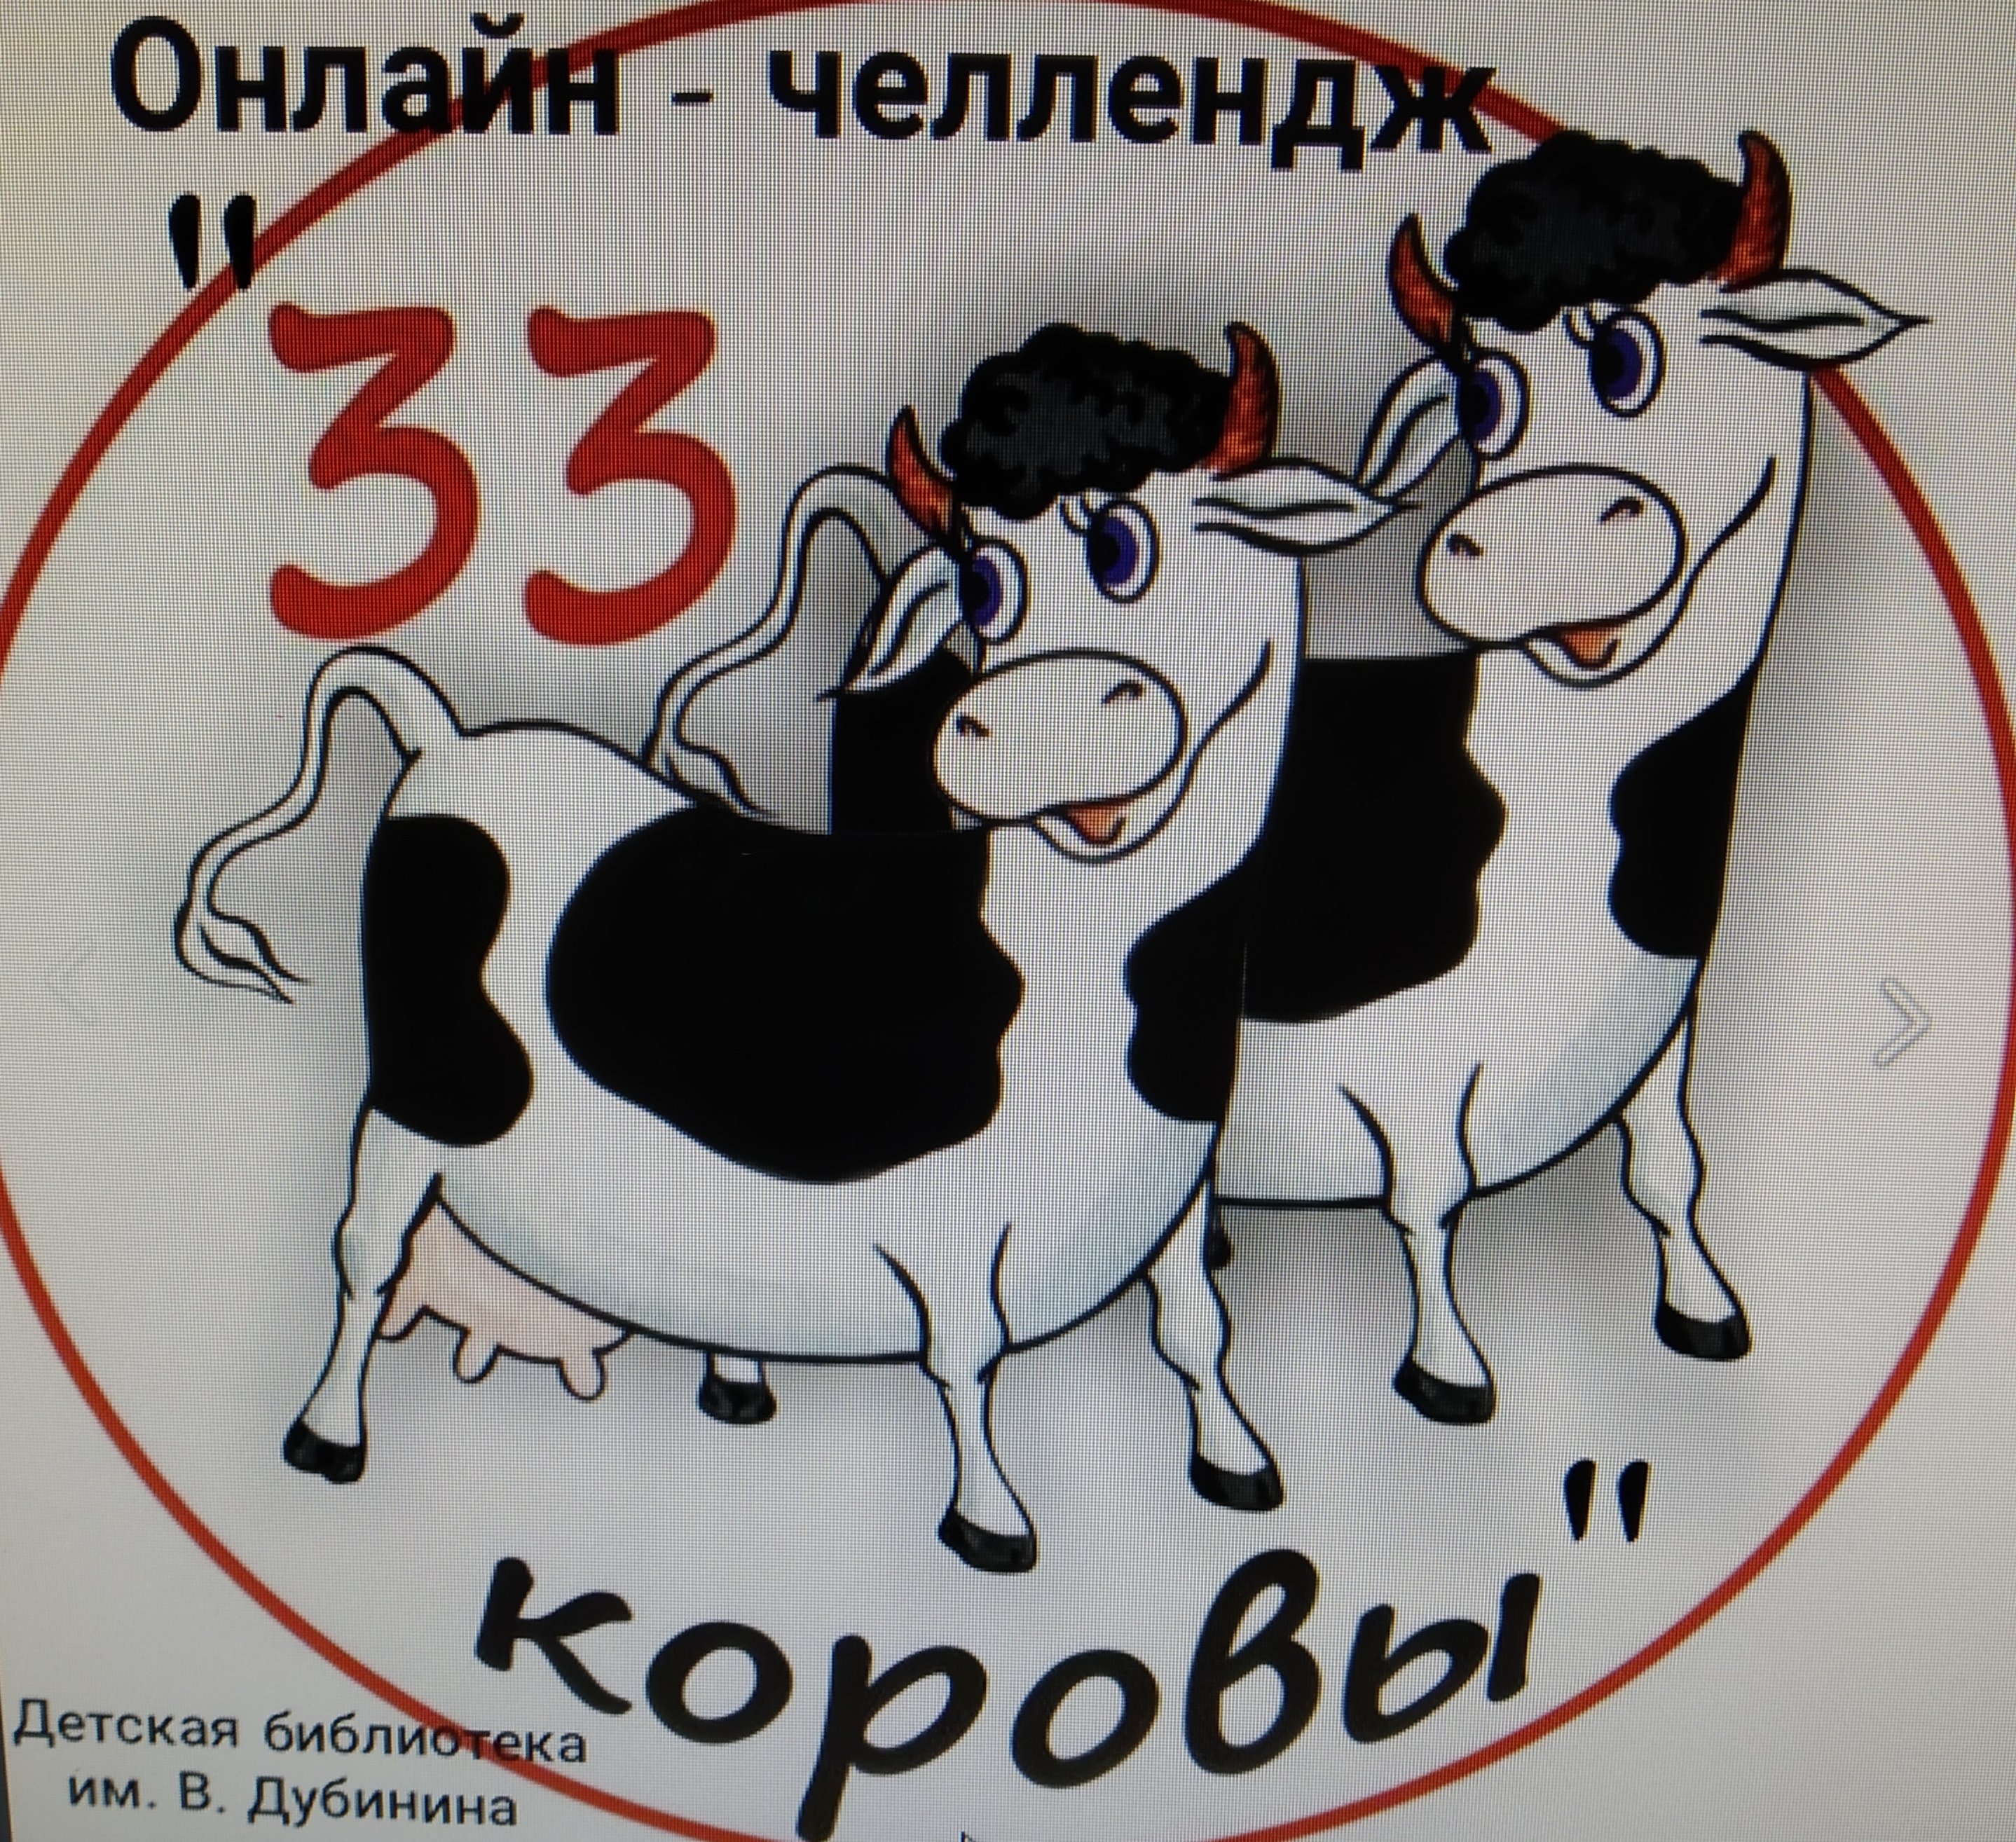 Три три коровы песня. 33 Коровы. Торт 33 корове. ЗЗ коровы. Молочная продукция 33 коровы.